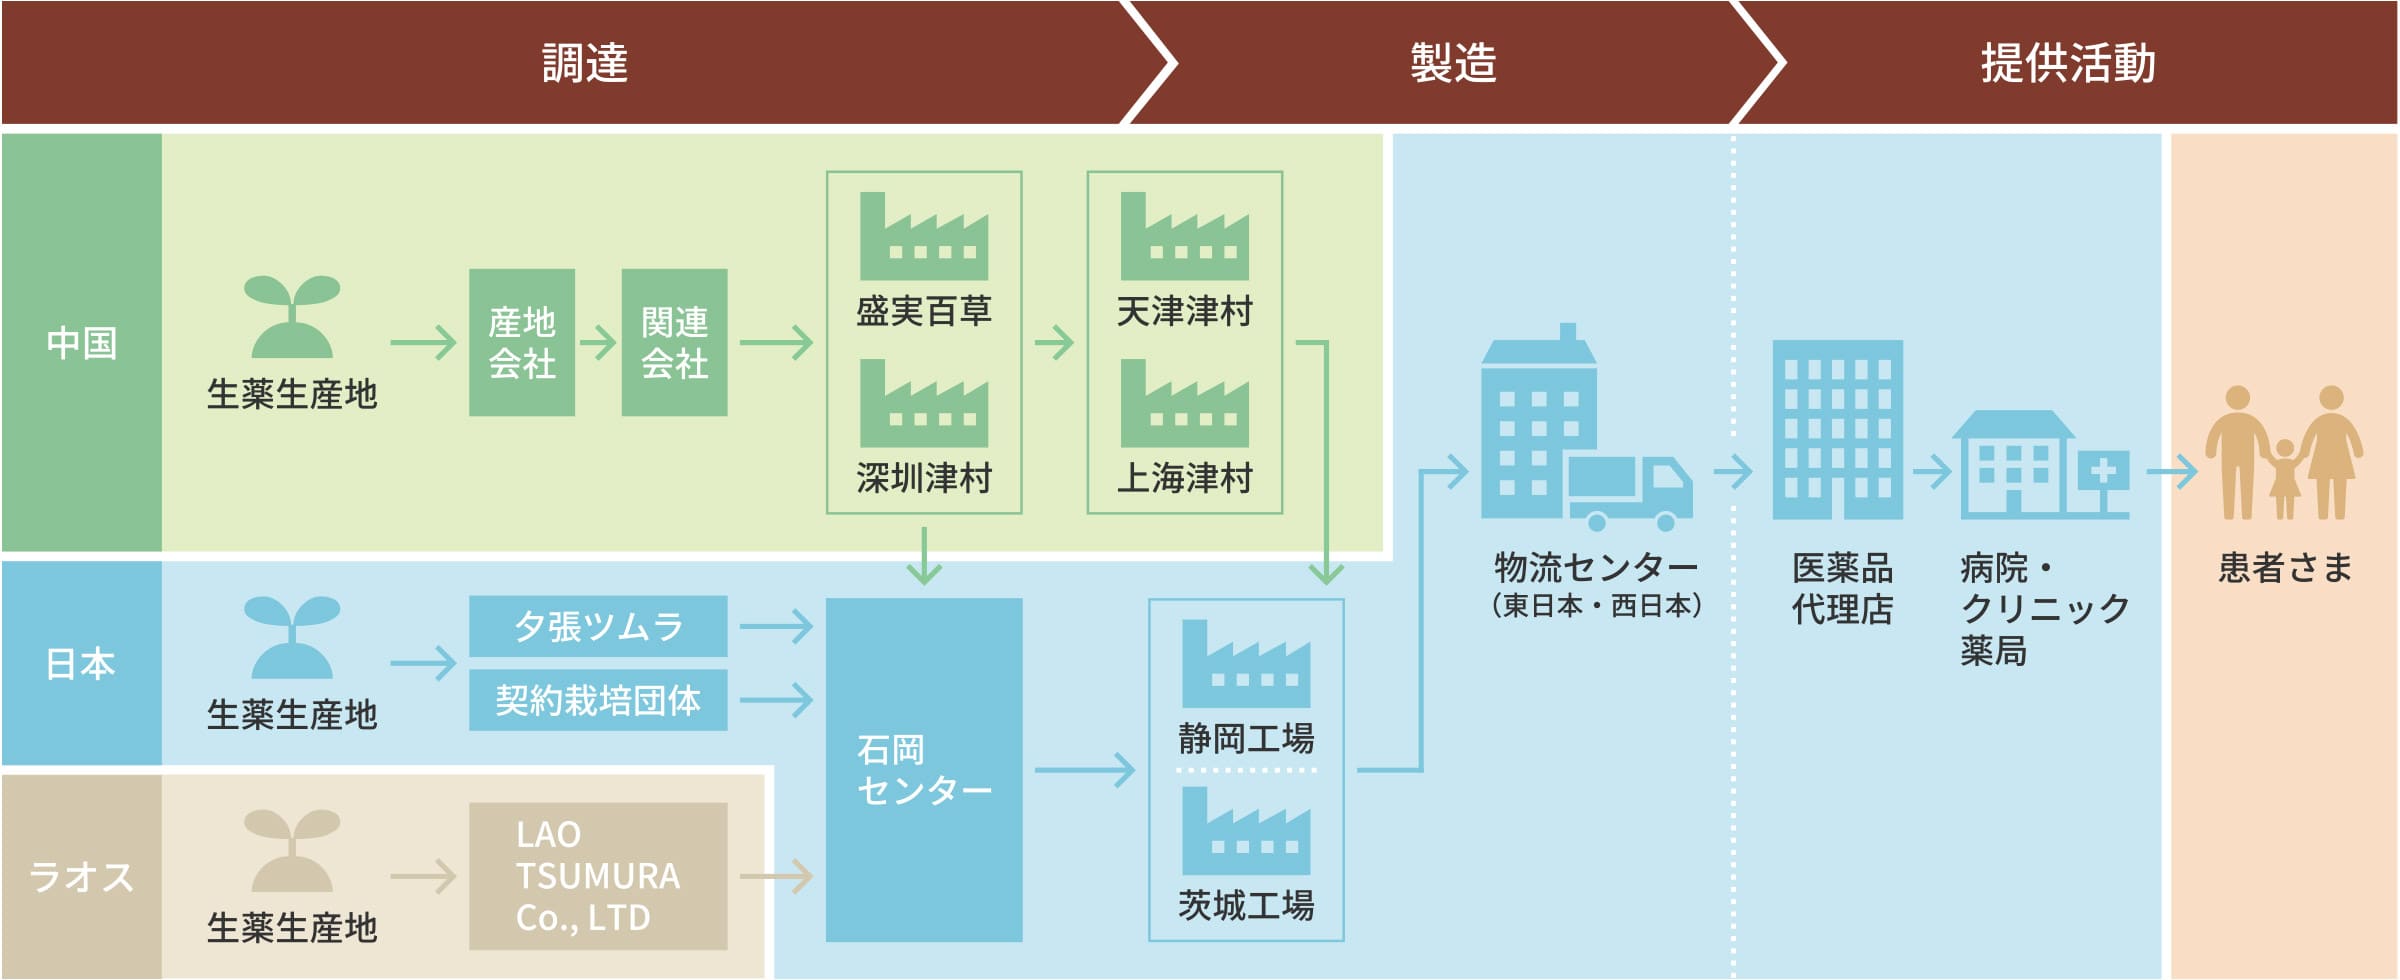 中国、日本、ラオスにおける調達、製造、提供活動の工程